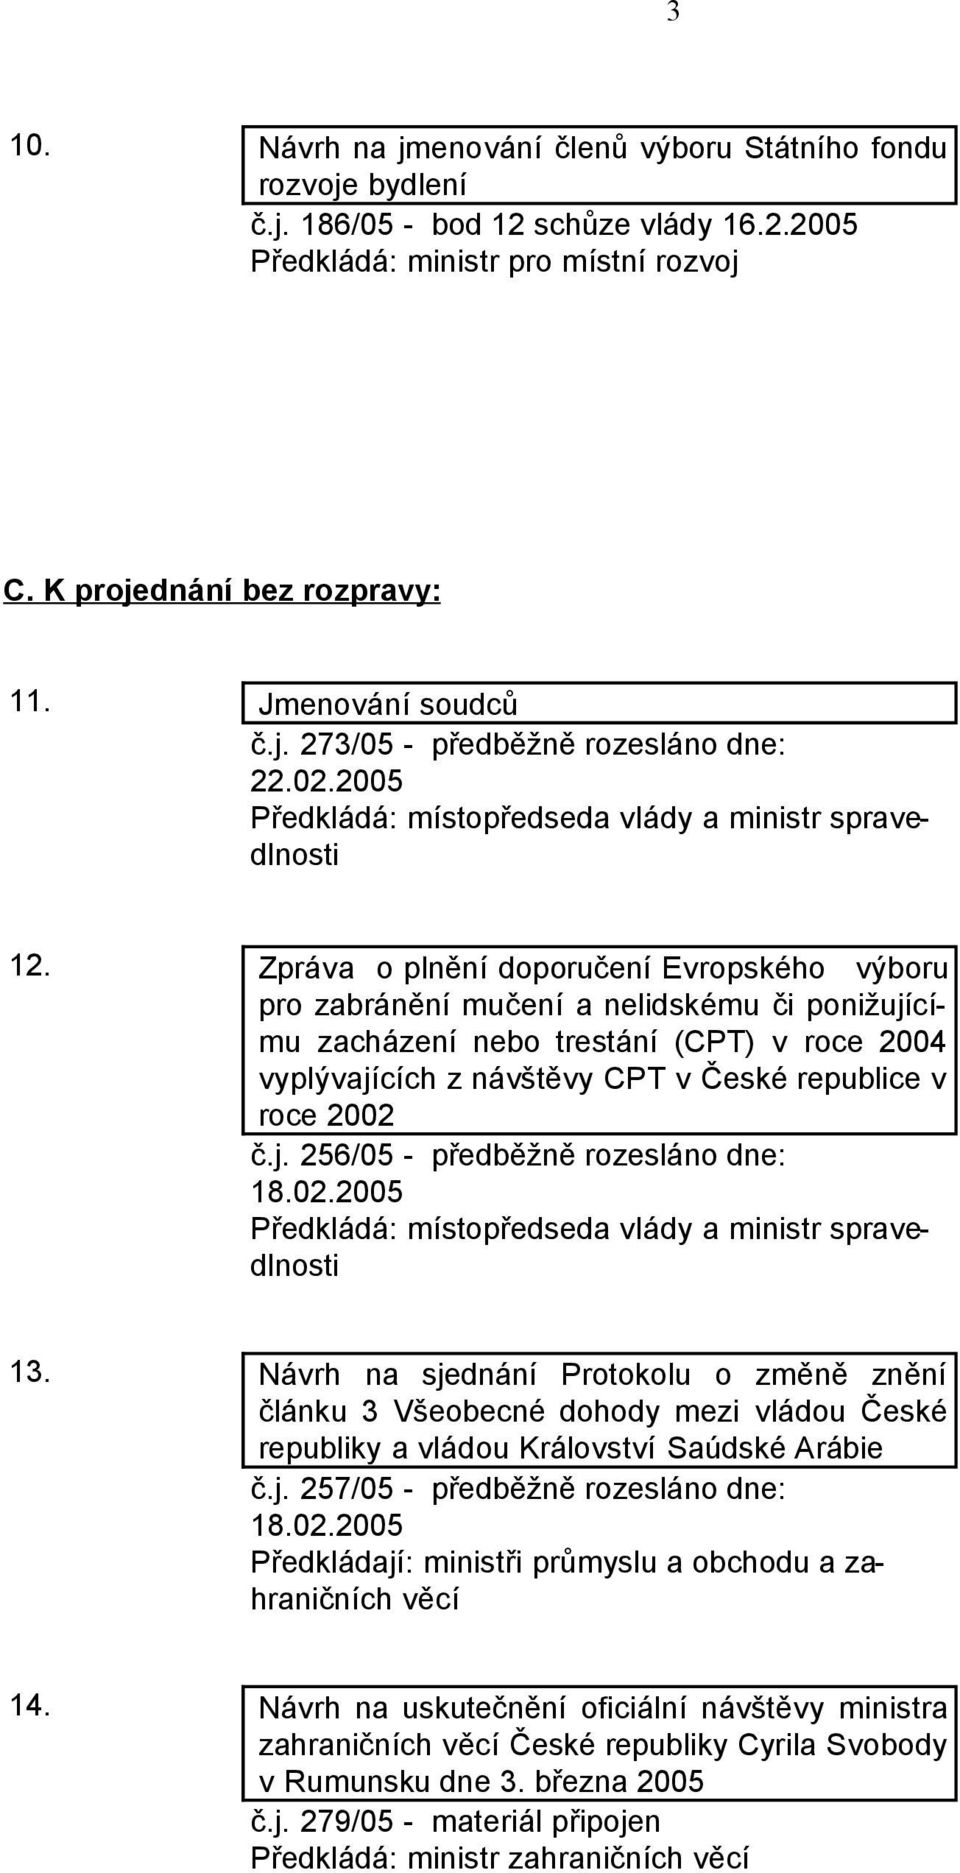 Zpráva o plnění doporučení Evropského výboru pro zabránění mučení a nelidskému či ponižujícímu zacházení nebo trestání (CPT) v roce 2004 vyplývajících z návštěvy CPT v České republice v roce 2002 č.j. 256/05 - předběžně rozesláno dne: 18.